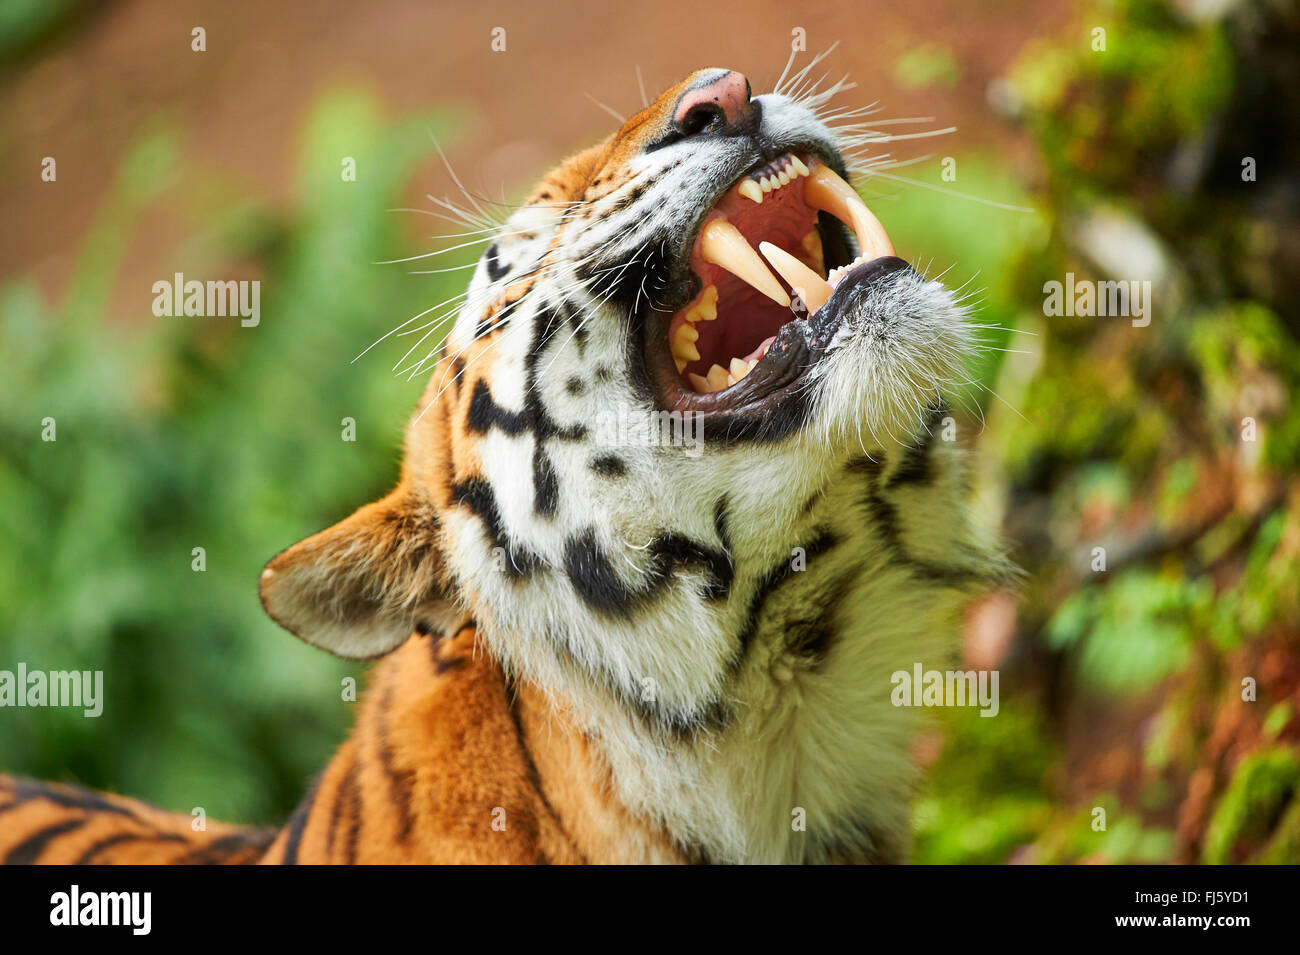 Dente di tigre immagini e fotografie stock ad alta risoluzione - Alamy